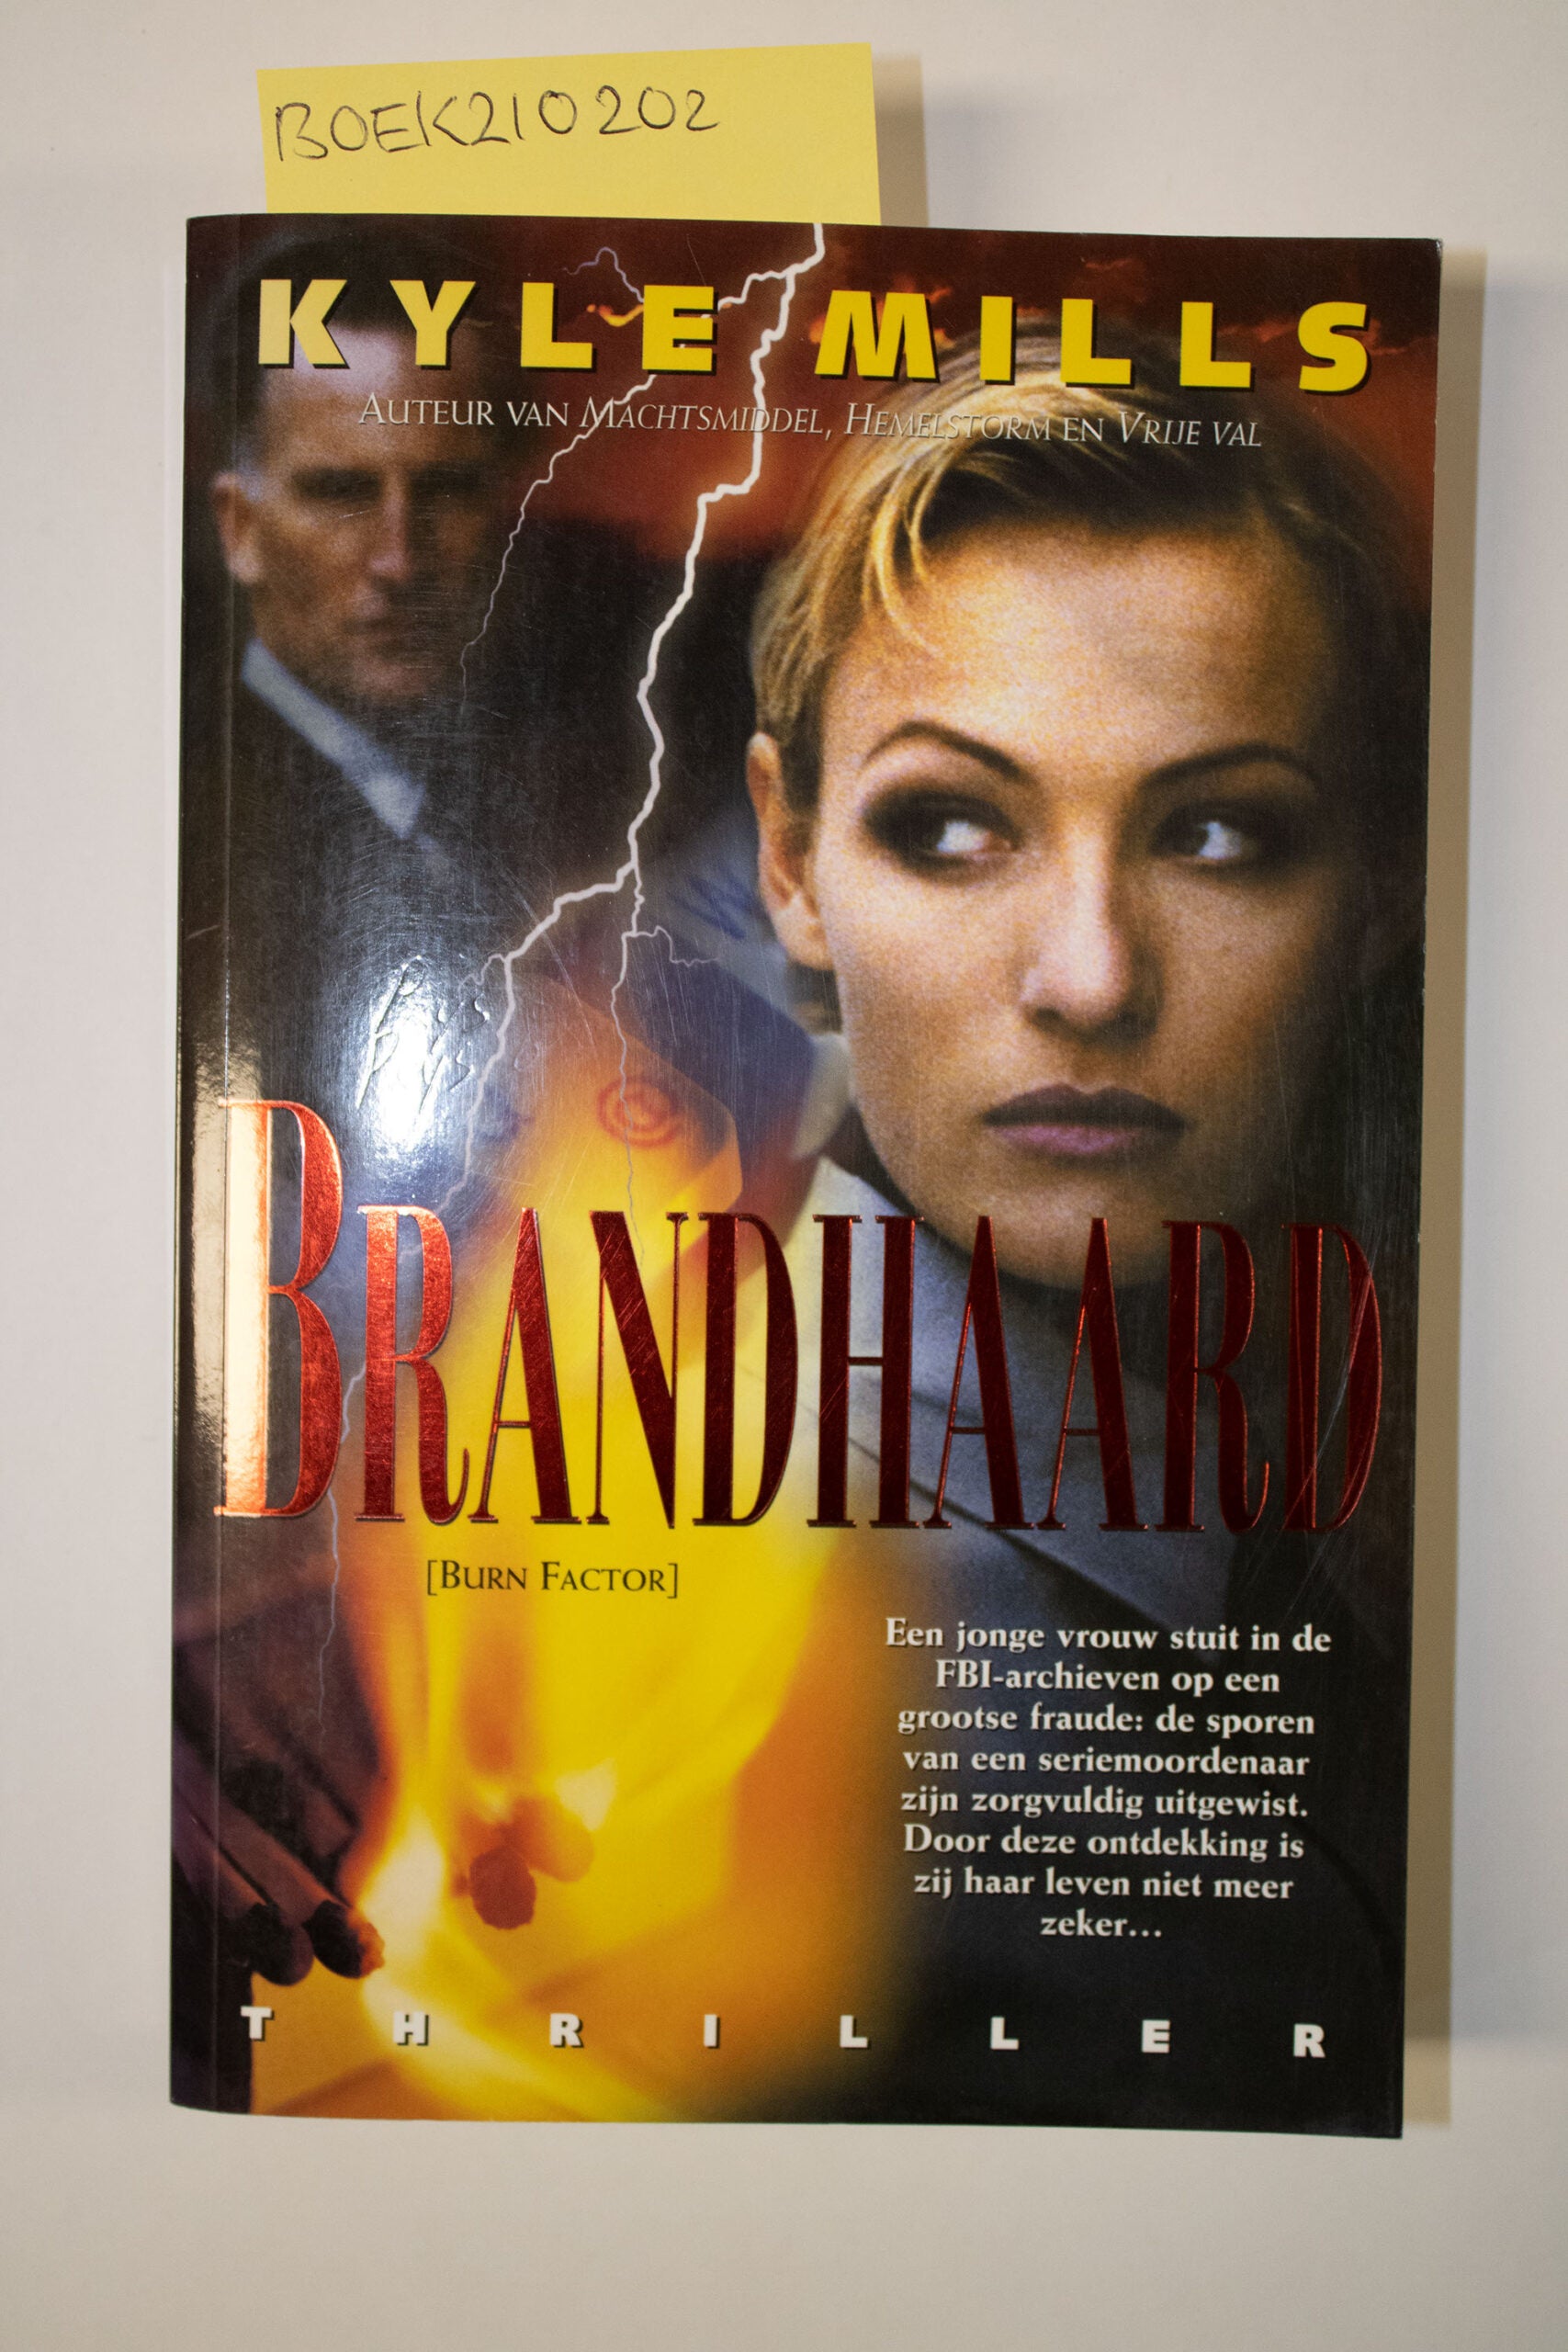 Brandhaard- Kyle Mills